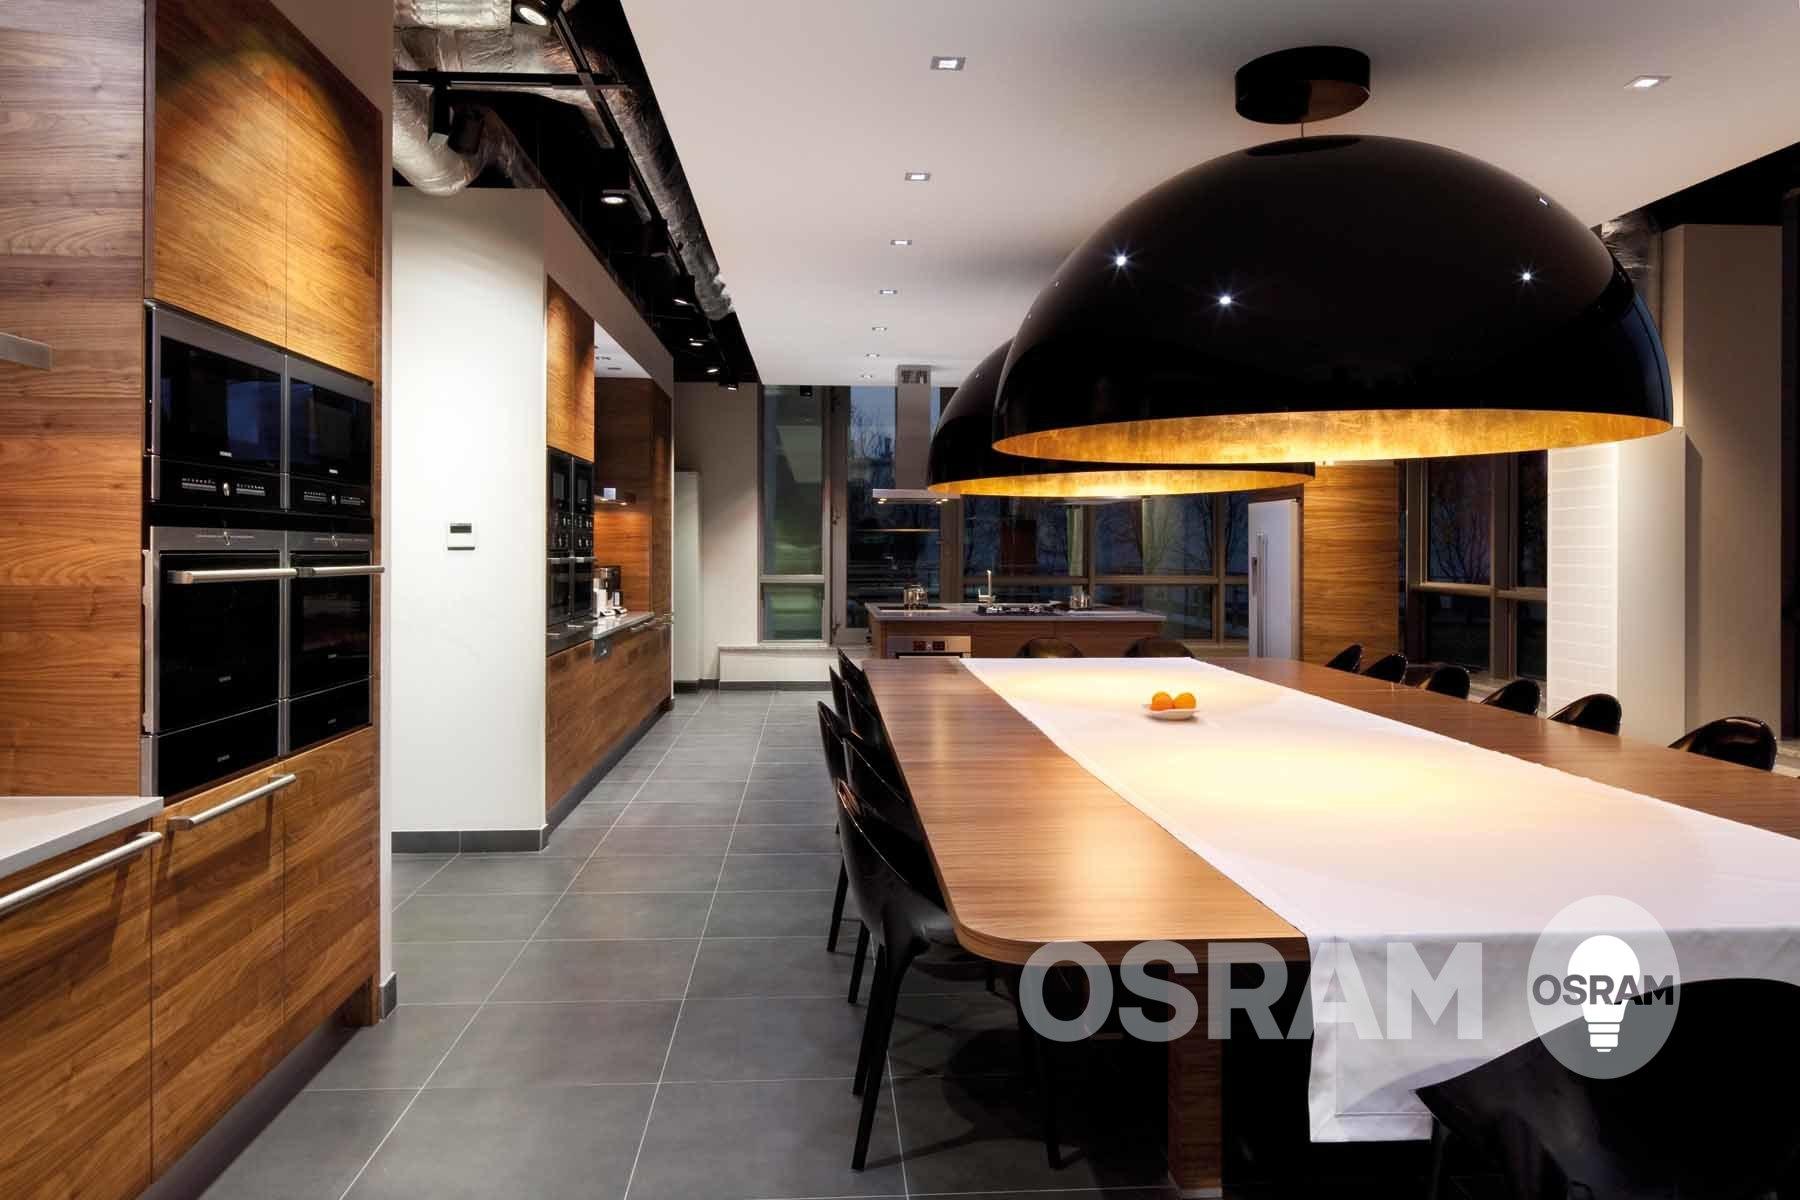 Viel Platz in der Küche #küche #esstisch #beleuchtung #lampe ©OSRAM